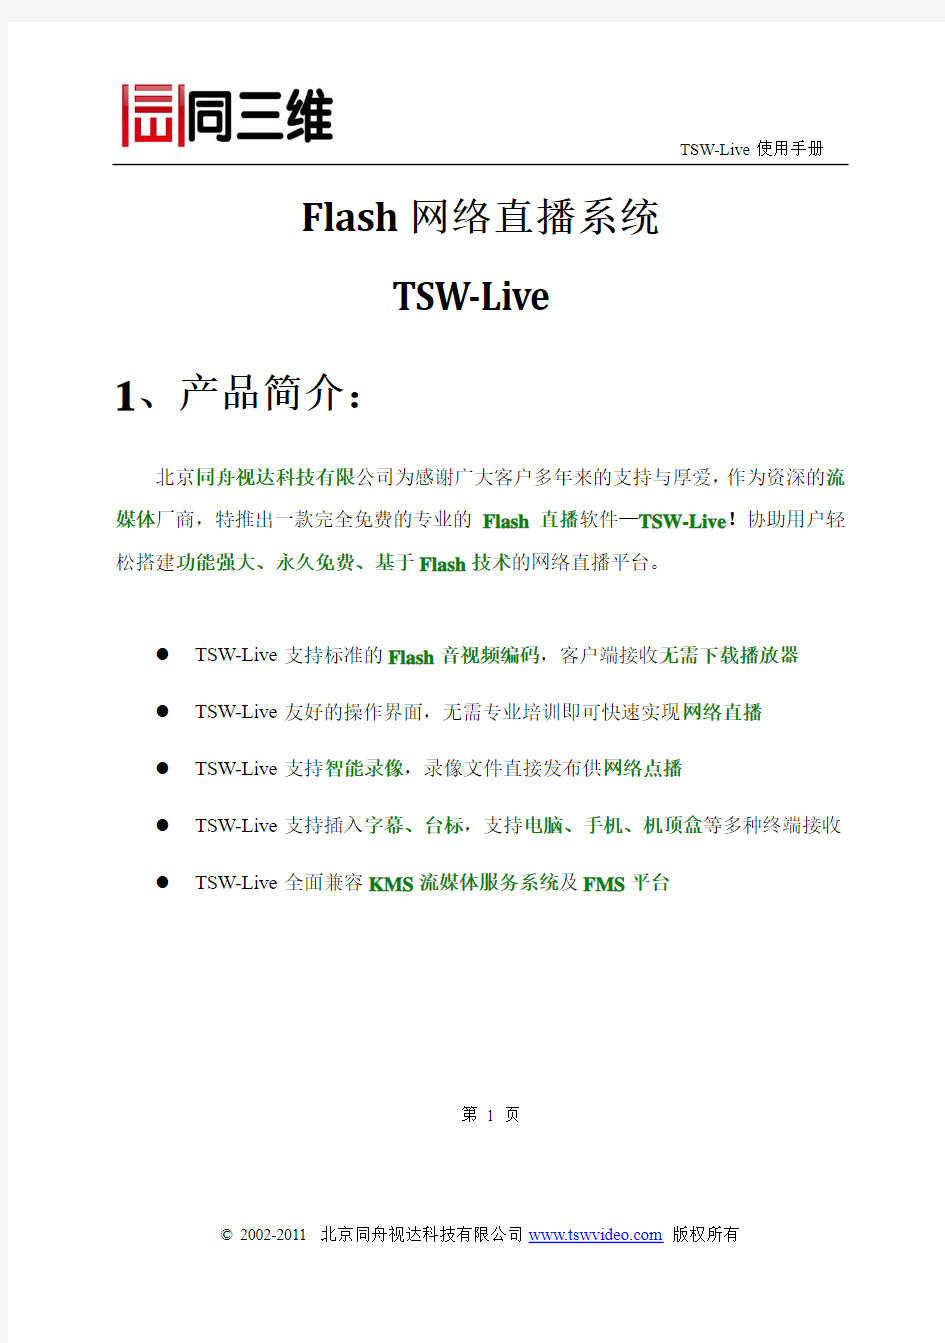 同三维免费专业版Flash直播软件—TSW-Live使用说明